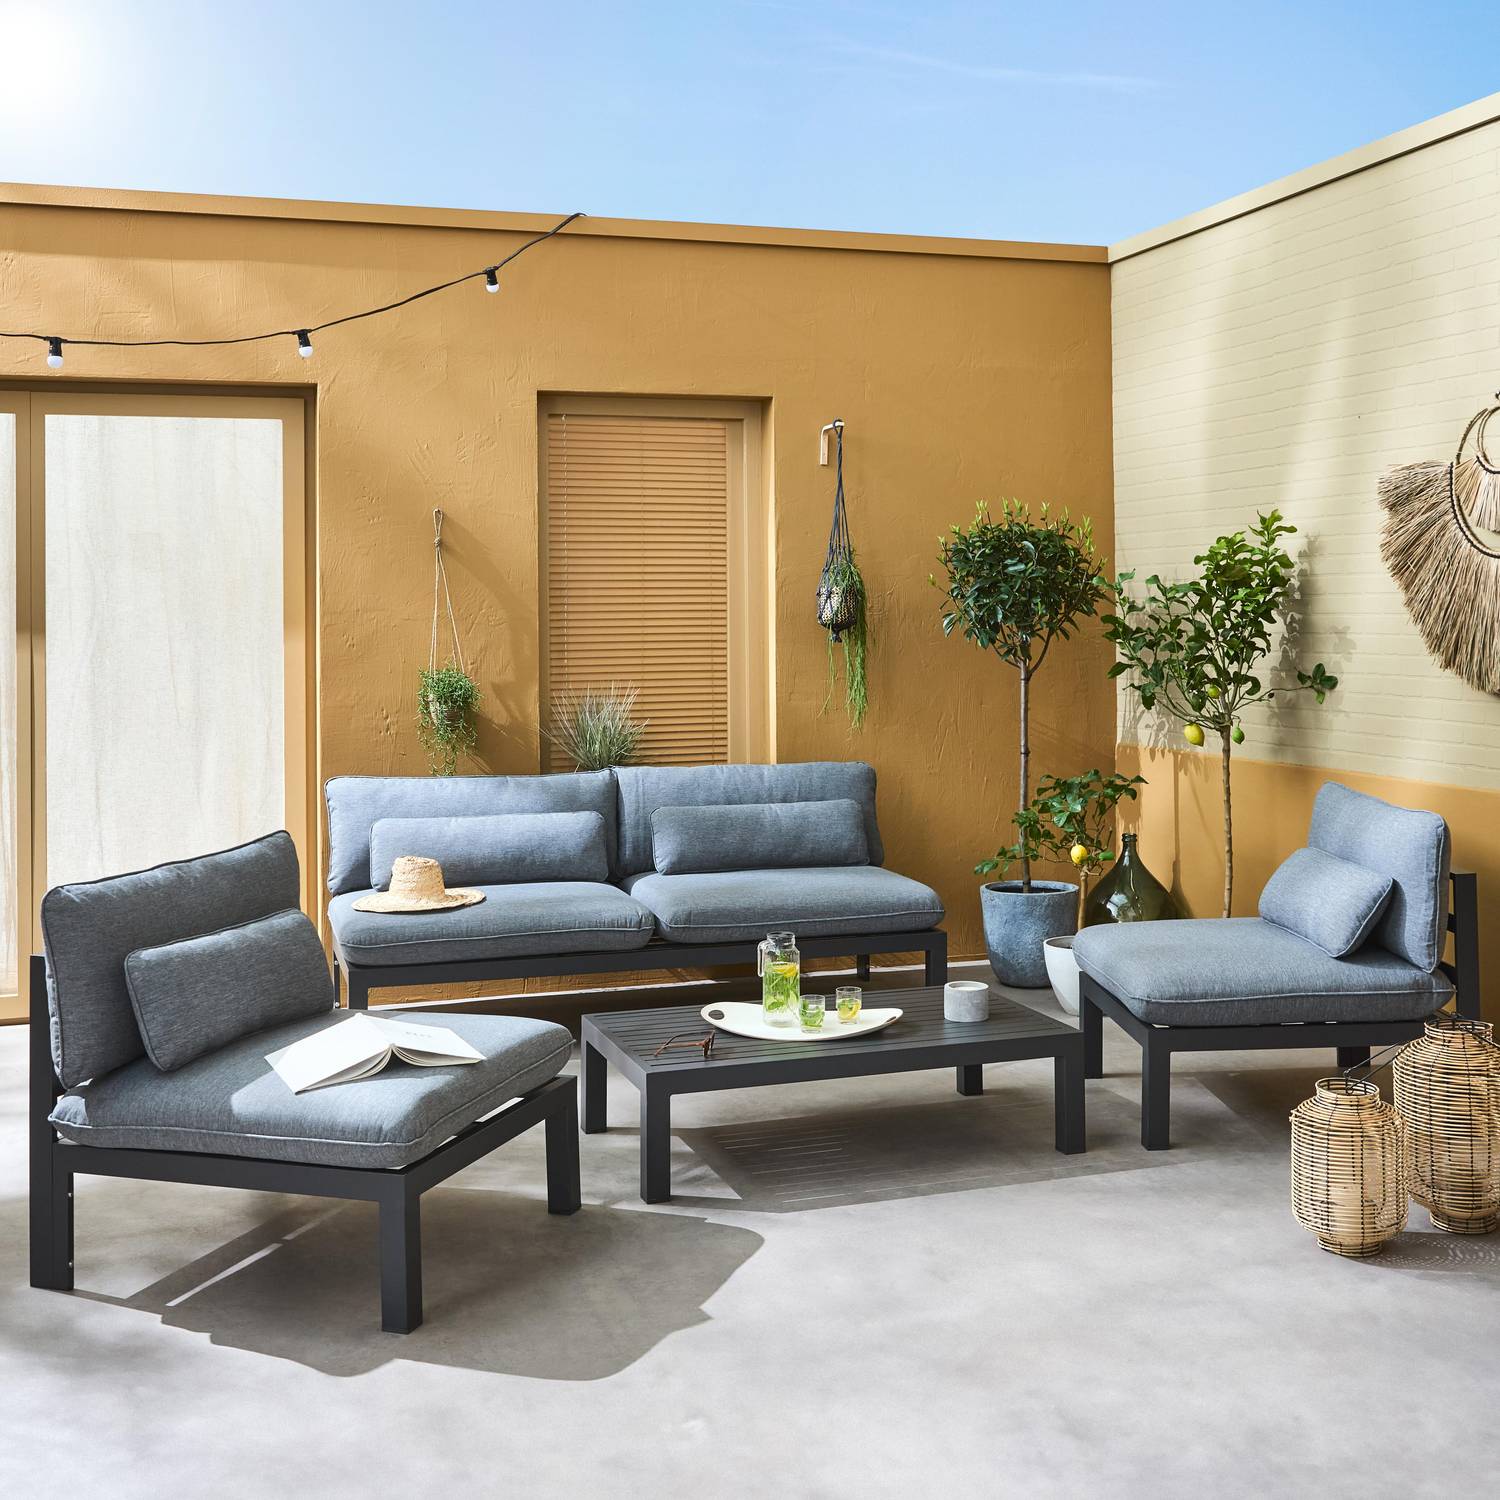 Salon de jardin 5 places en aluminium – assises profondes – Rieti – gris anthracite Photo1